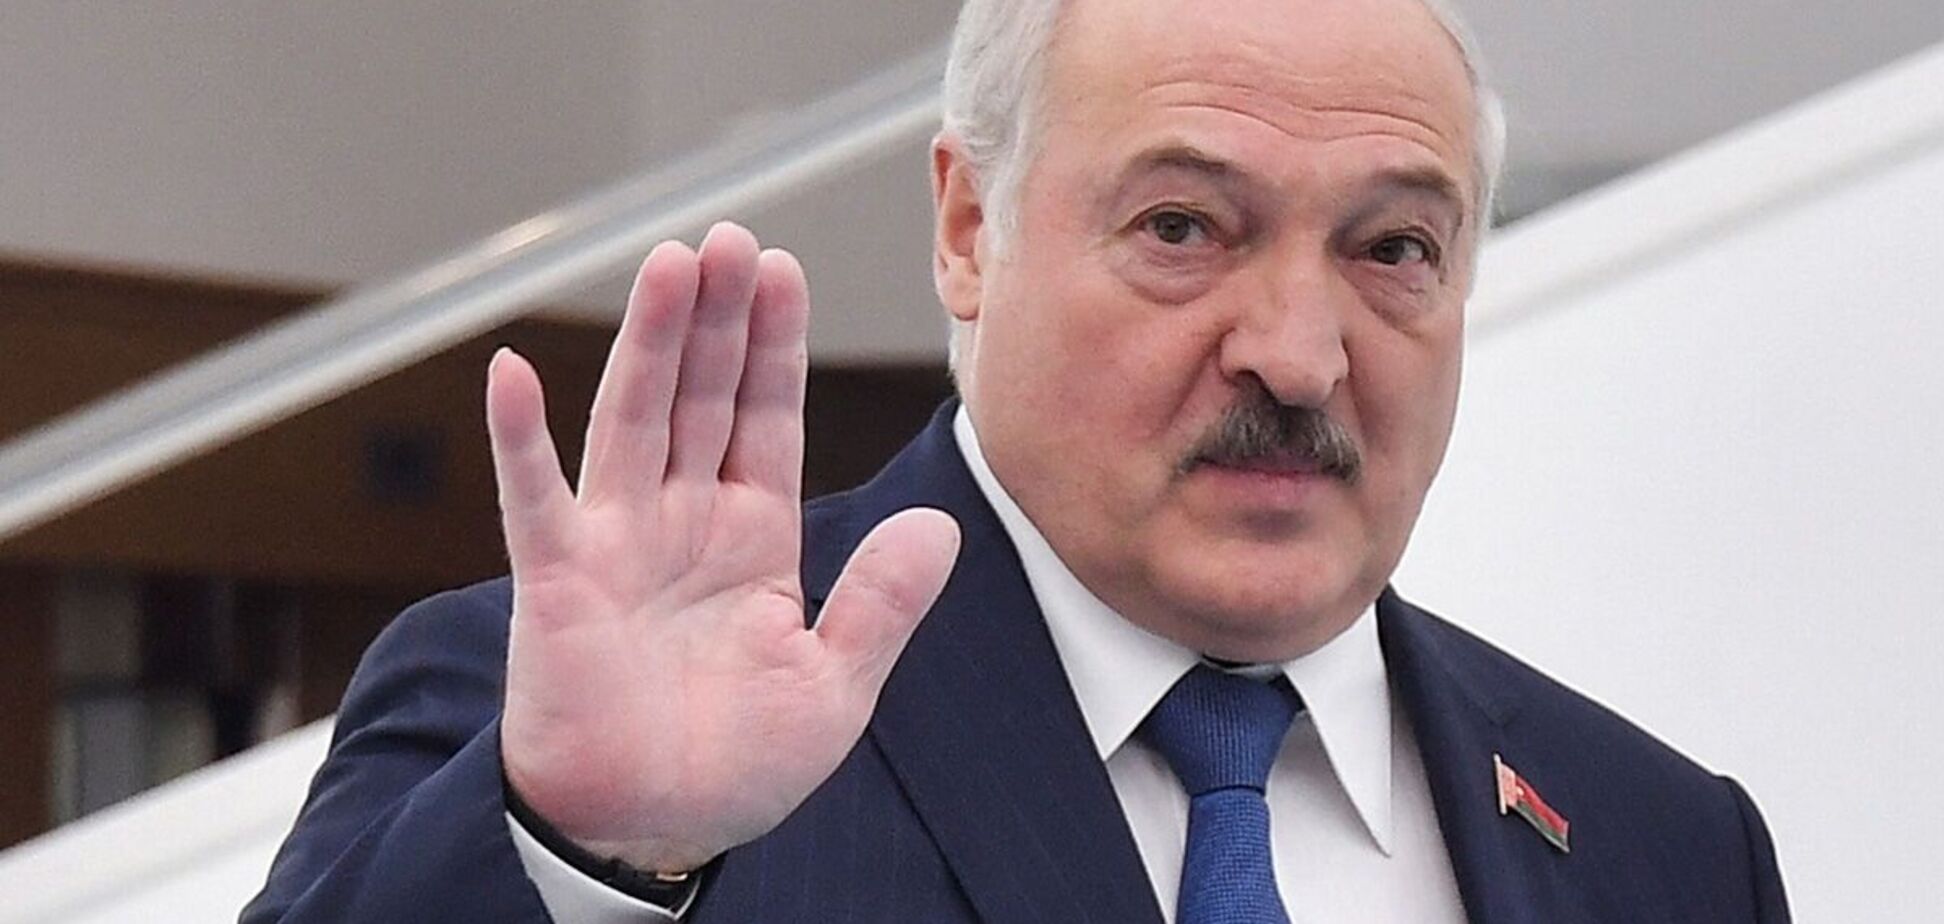 Лукашенко появился на публике после нескольких дней отсутствия: у него перебинтована рука. Фото